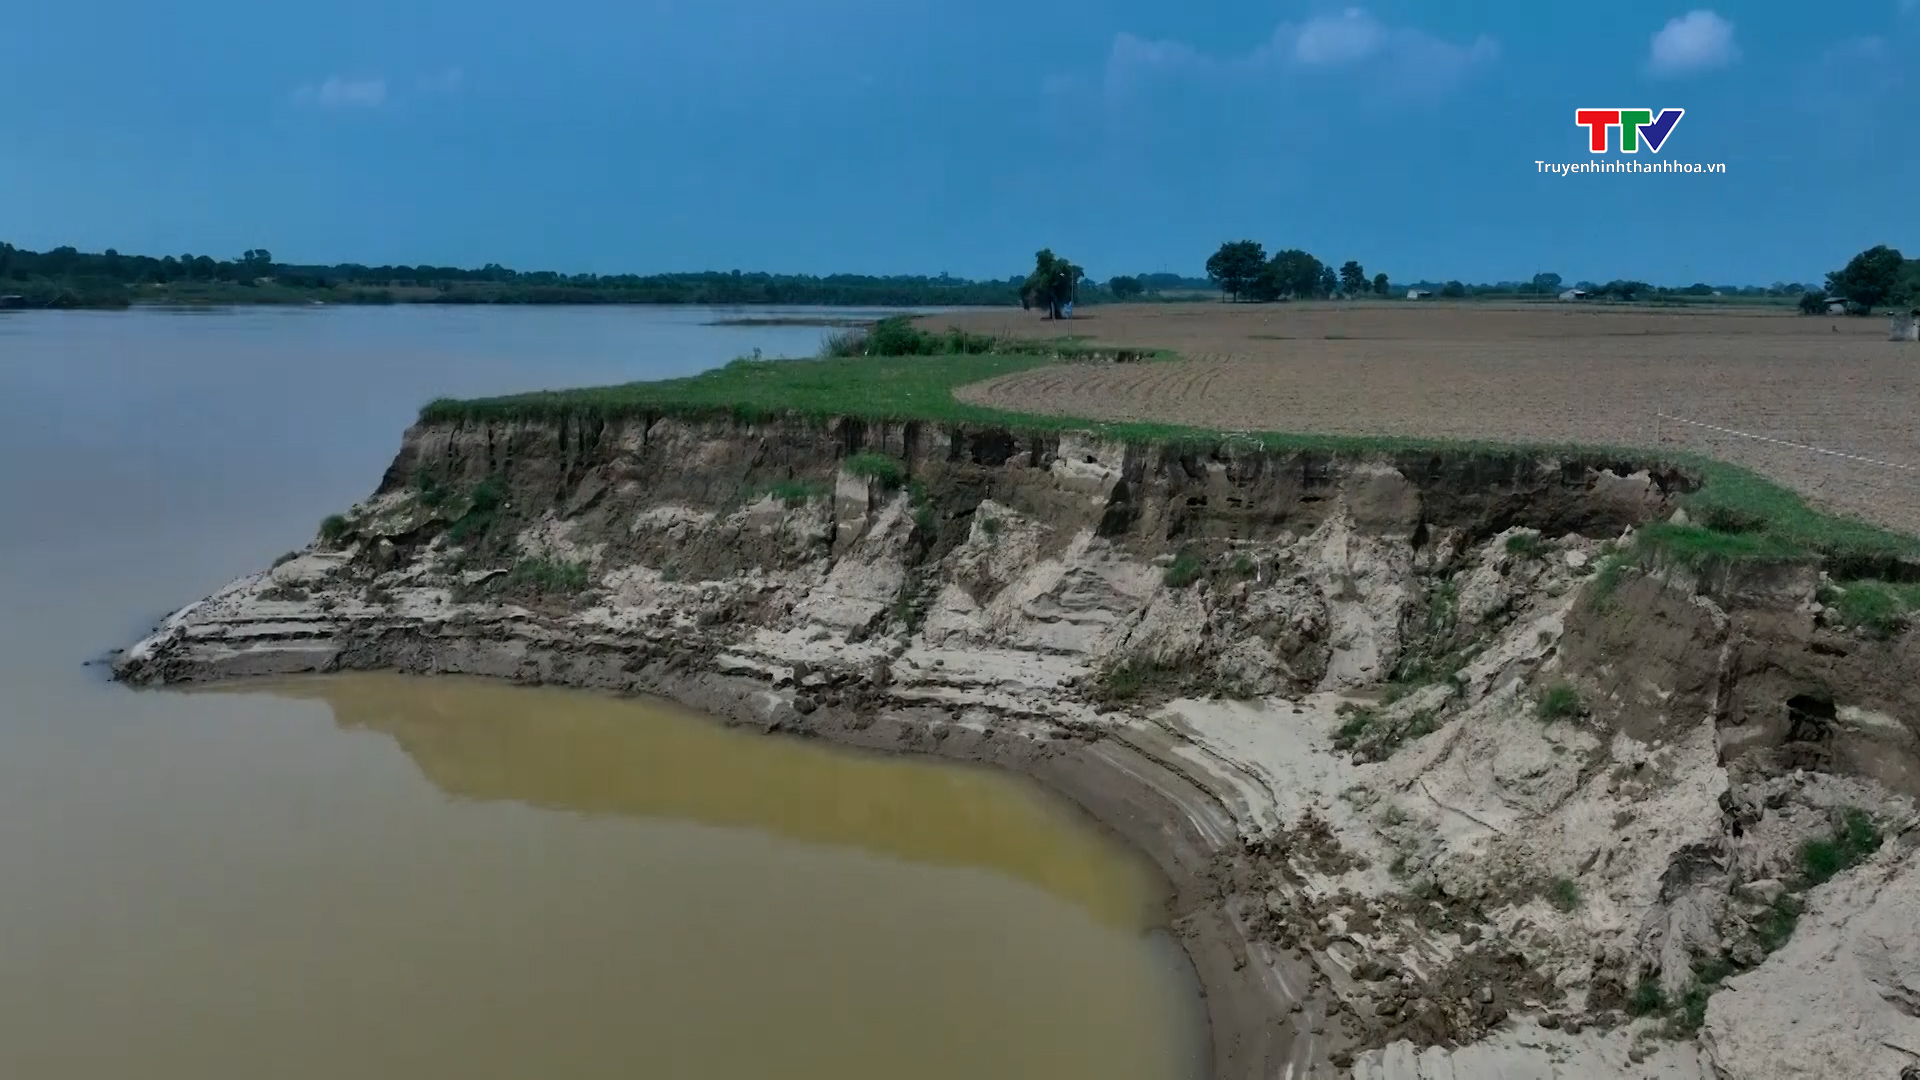 Báo động tình trạng sạt lở nghiêm trọng bờ tả sông Mã ở Vĩnh Lộc - Ảnh 2.